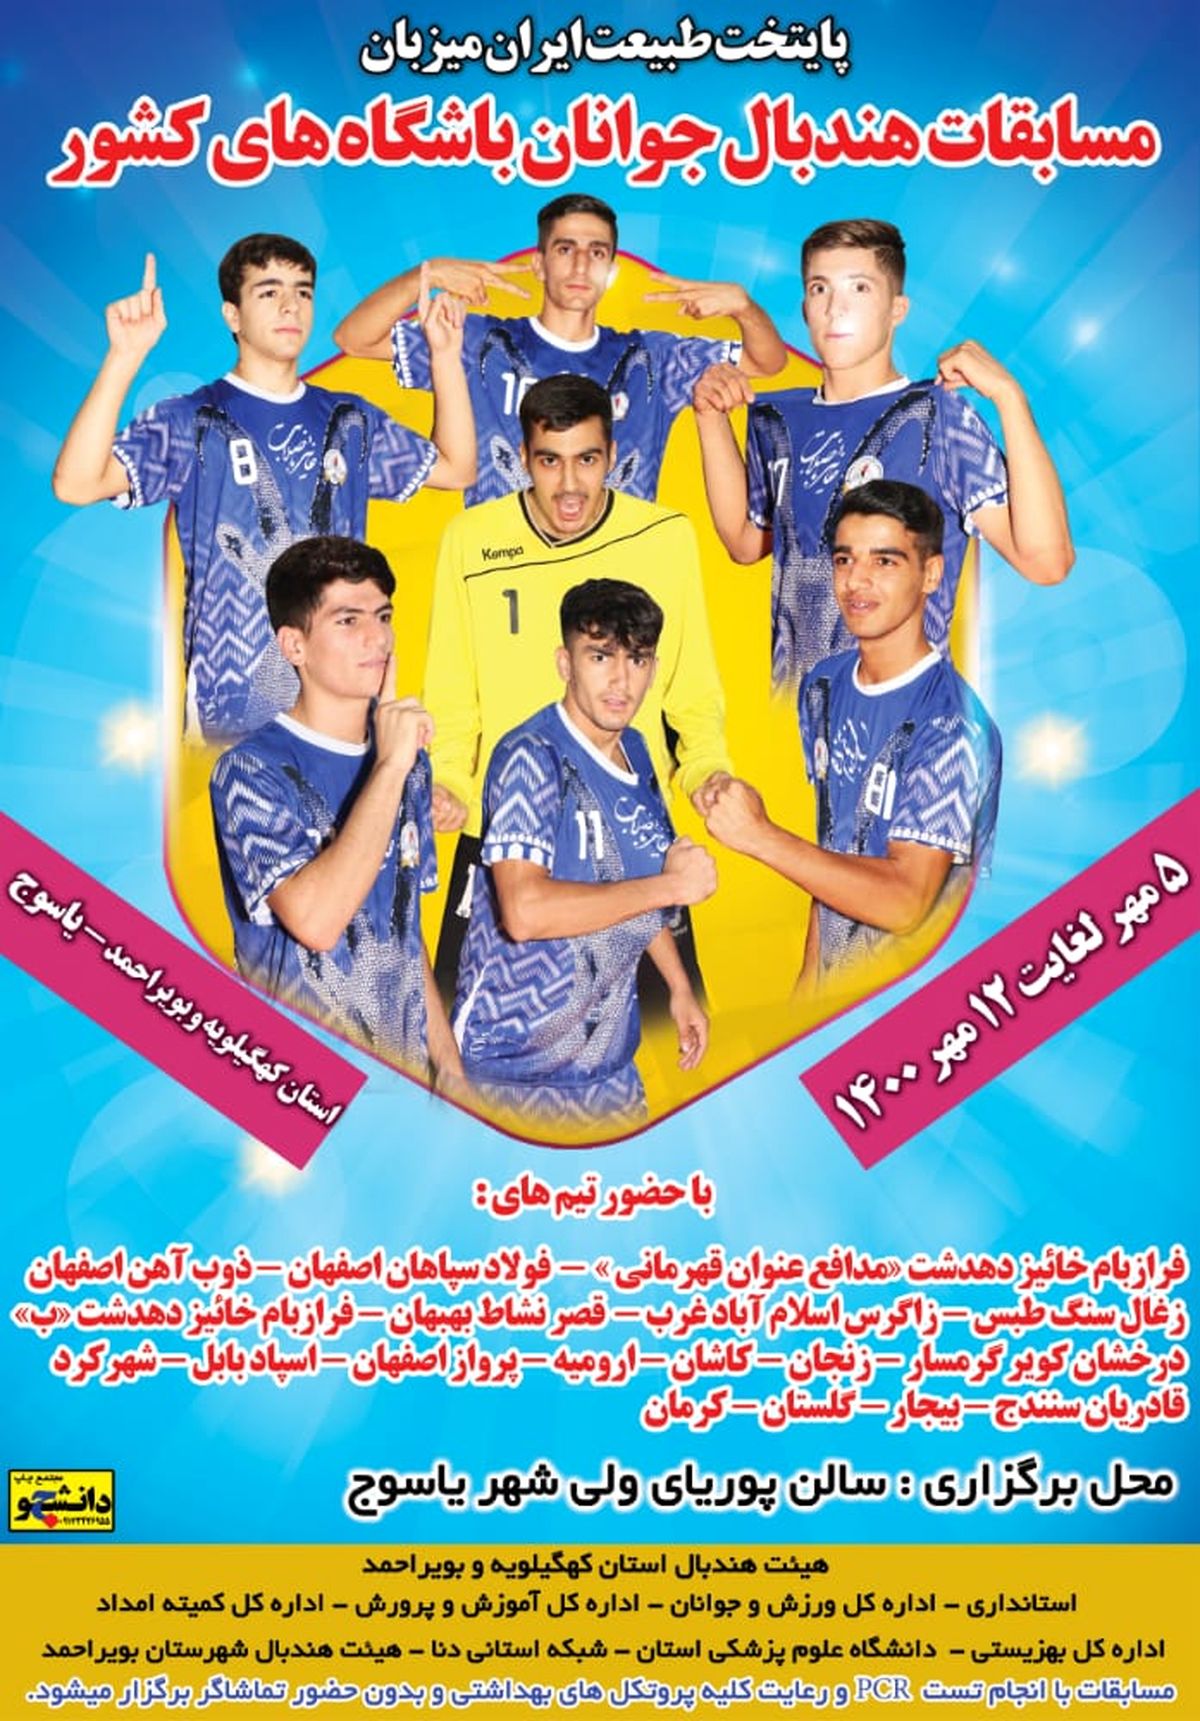 یاسوج میزبان رقابتهای هندبال جوانان باشگاه ها و دسته جات آزاد کشور است